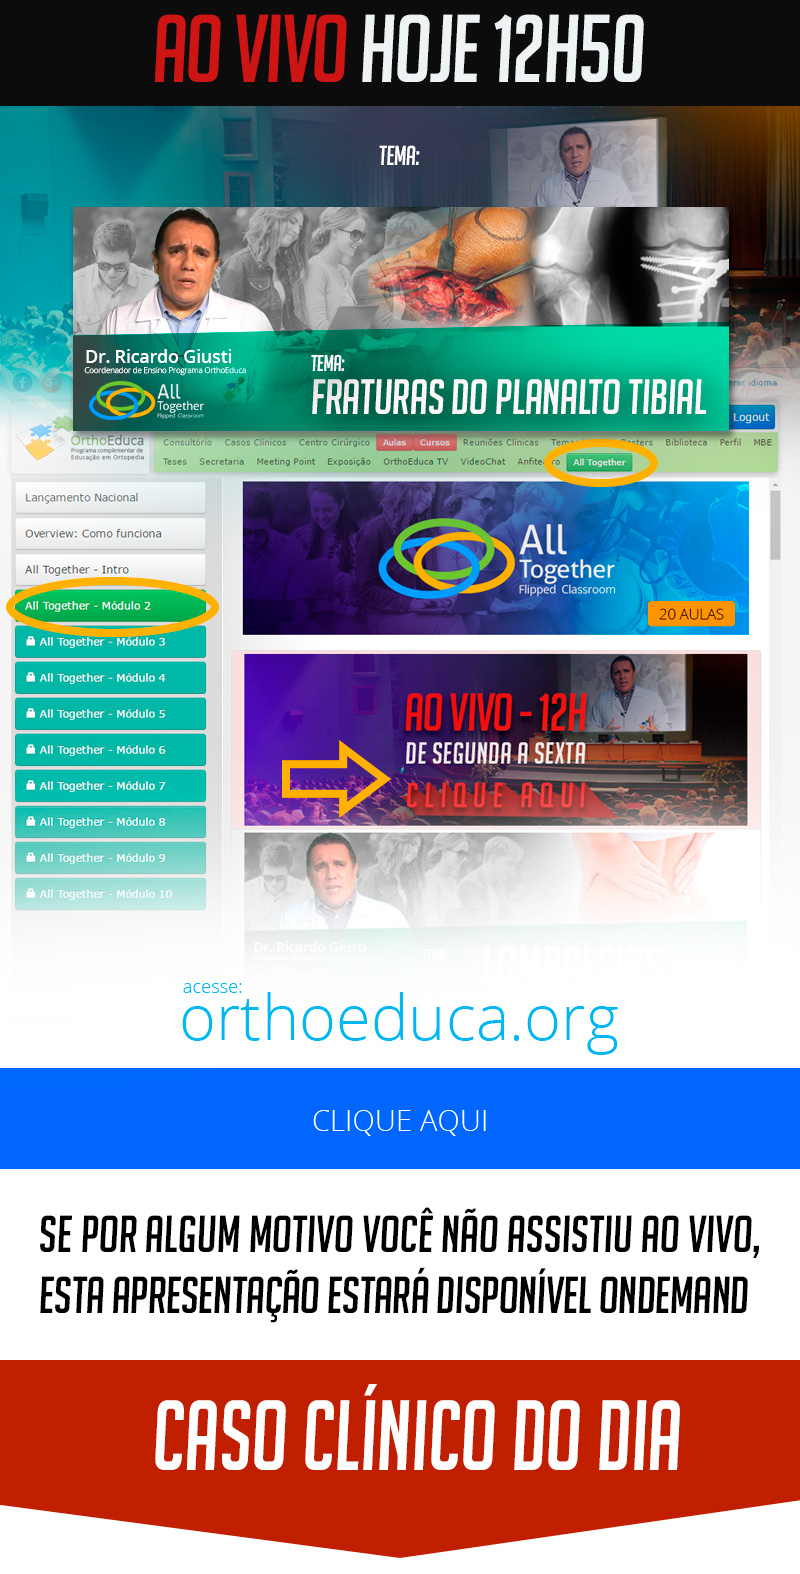 Fraturas do Planalto Tibial - Caso clínico de hoje no All Together às 12h50 - Participe!